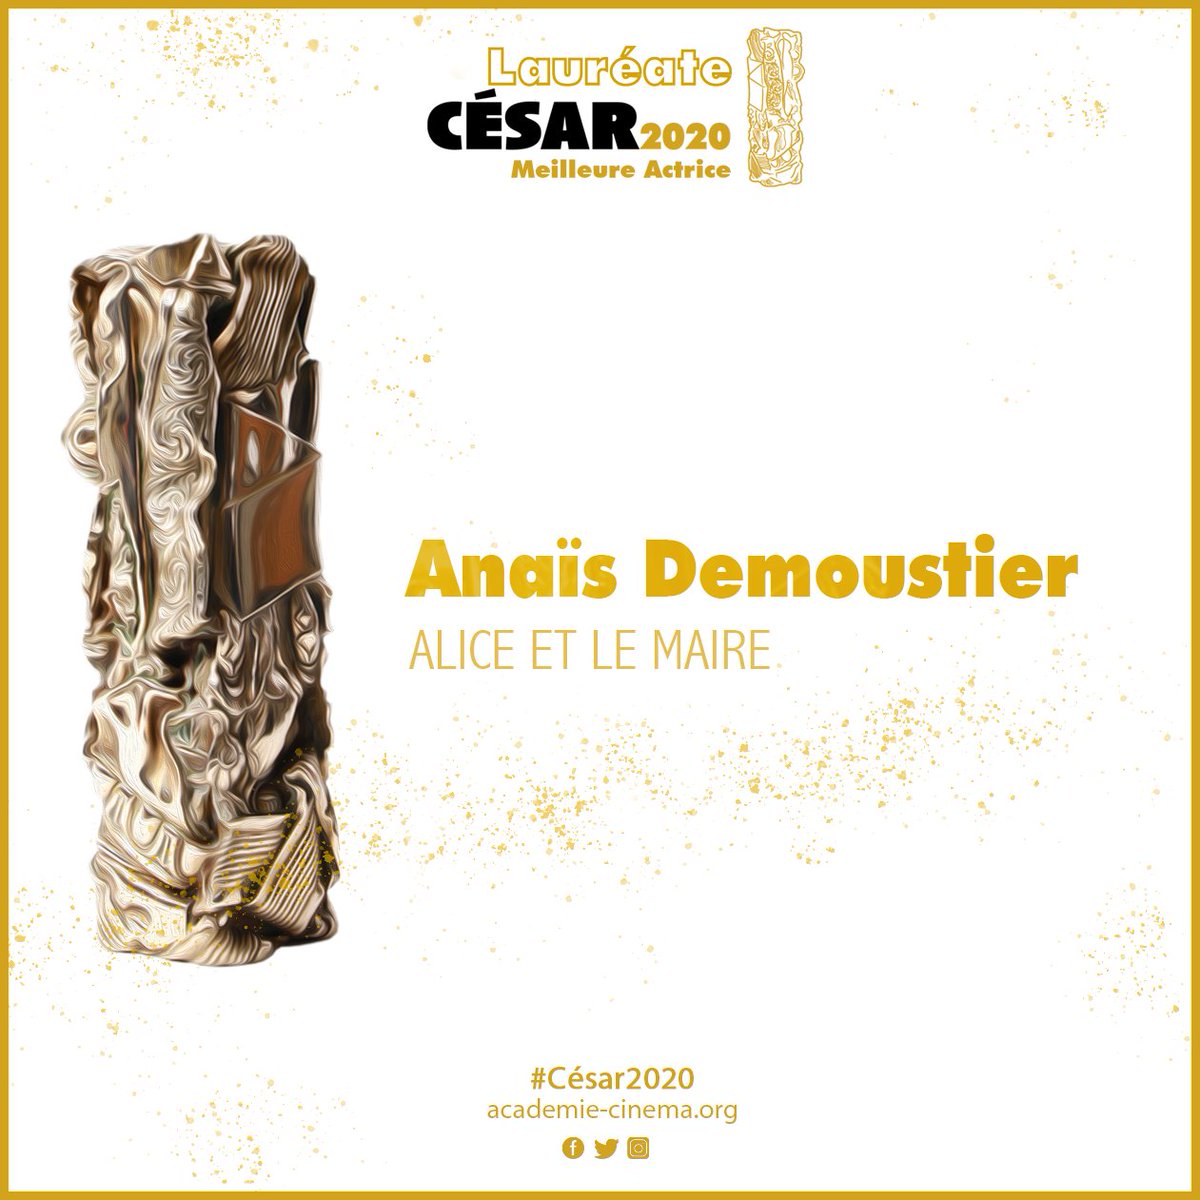 Anaïs Demoustier #César2020 de la Meilleure Actrice dans ALICE ET LE MAIRE
#anaisdemoustier #aliceetlemaire